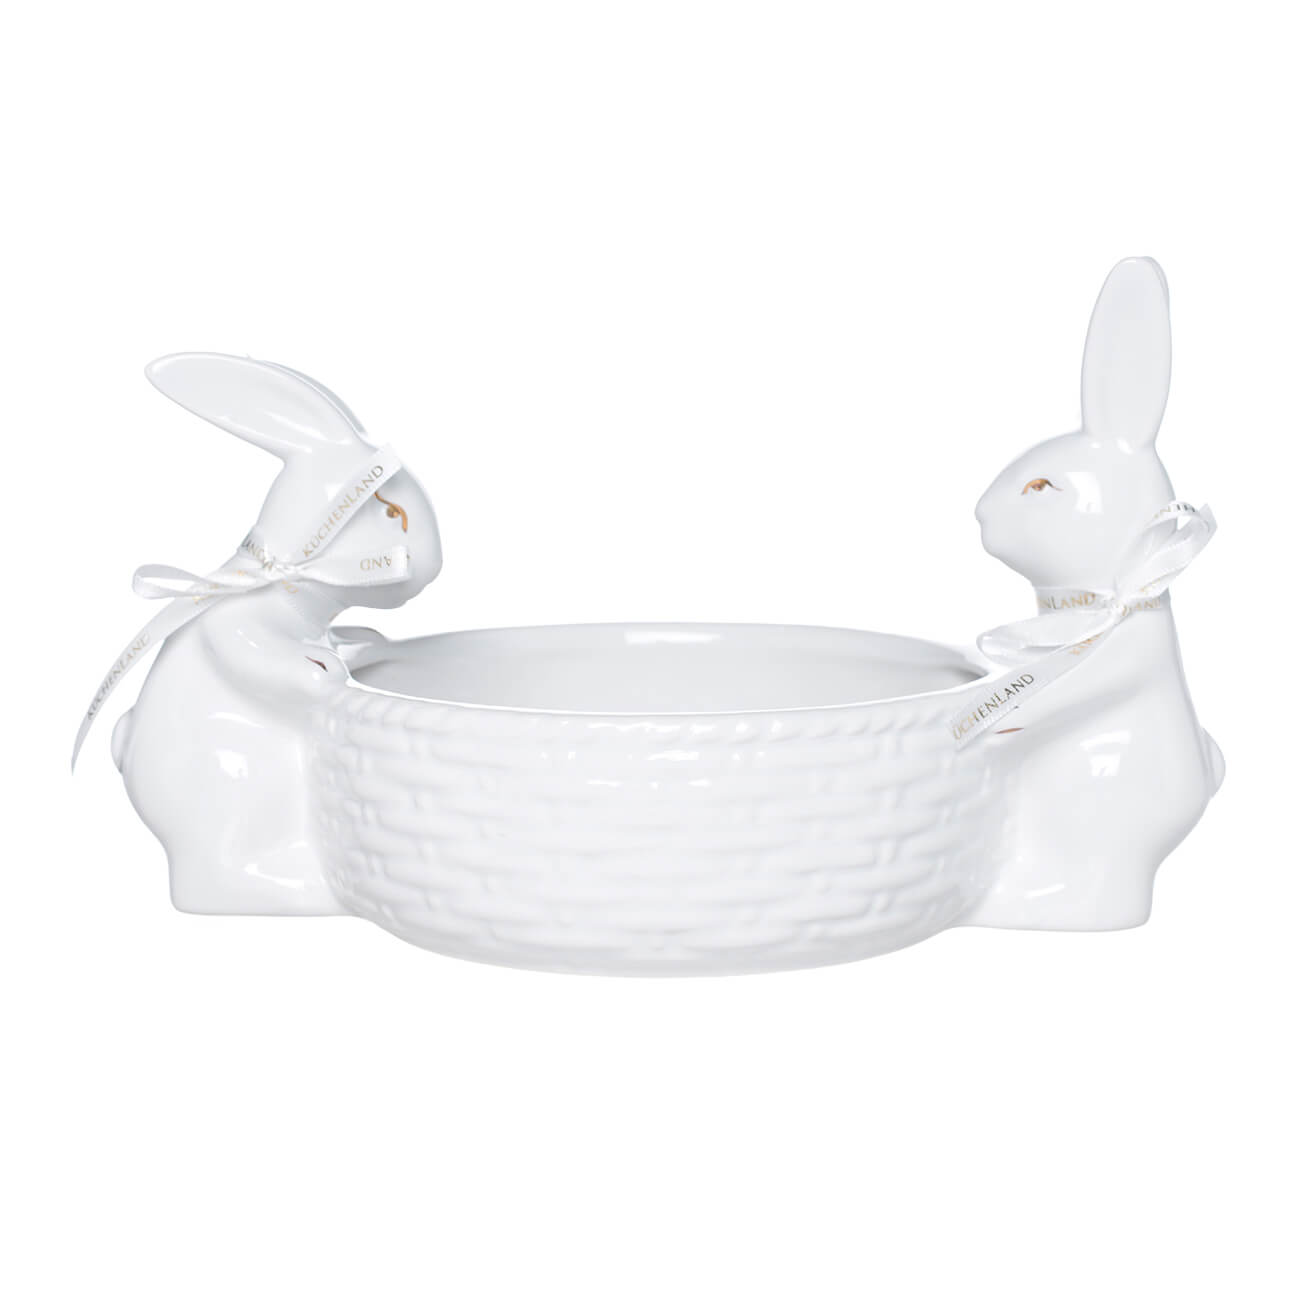 Конфетница, 27х17 см, керамика, белая, Два кролика с корзиной, Easter gold